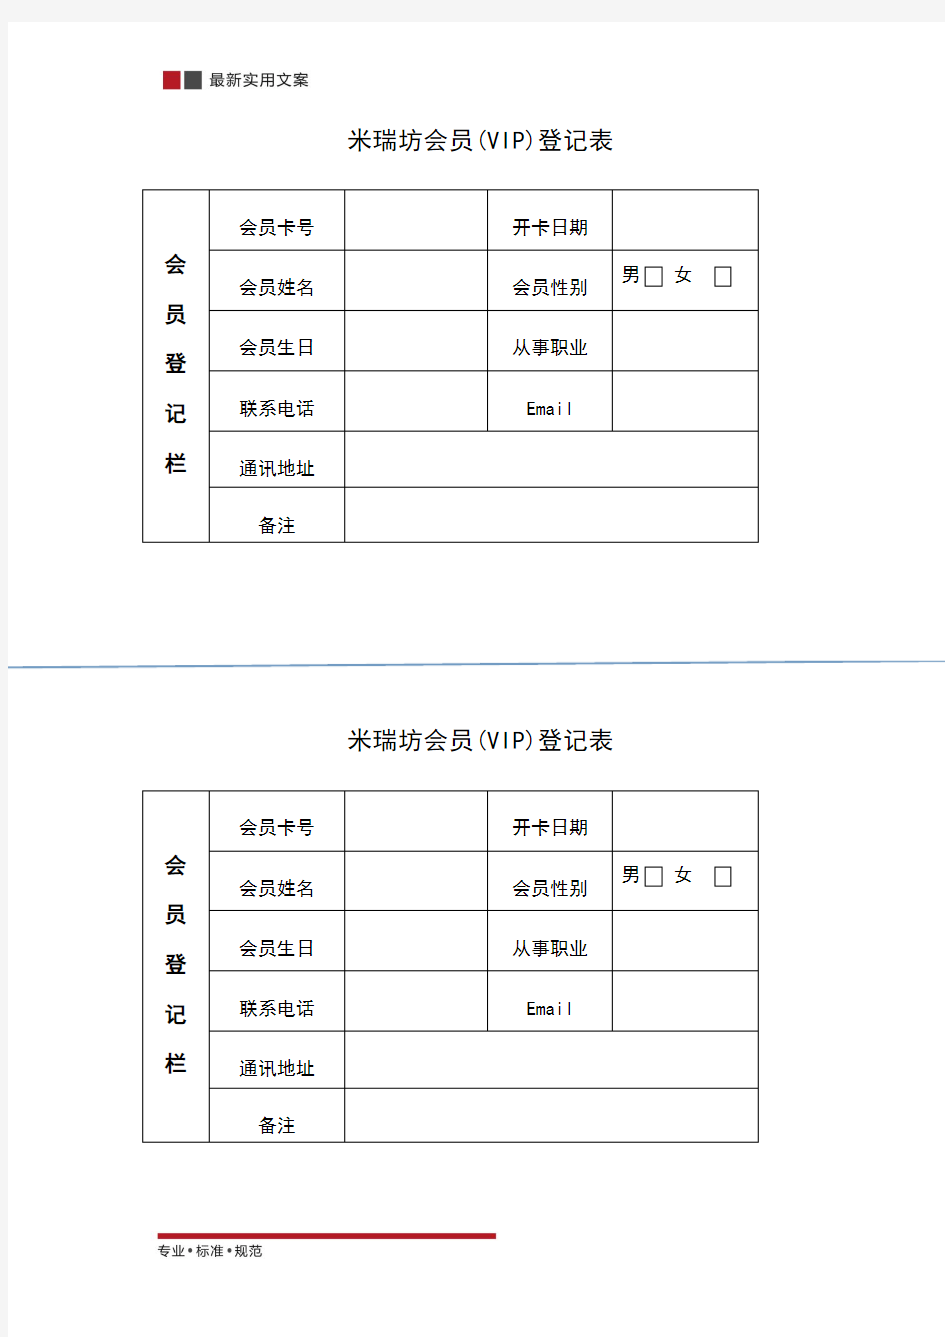 【范本】会员信息登记表(标准模板)